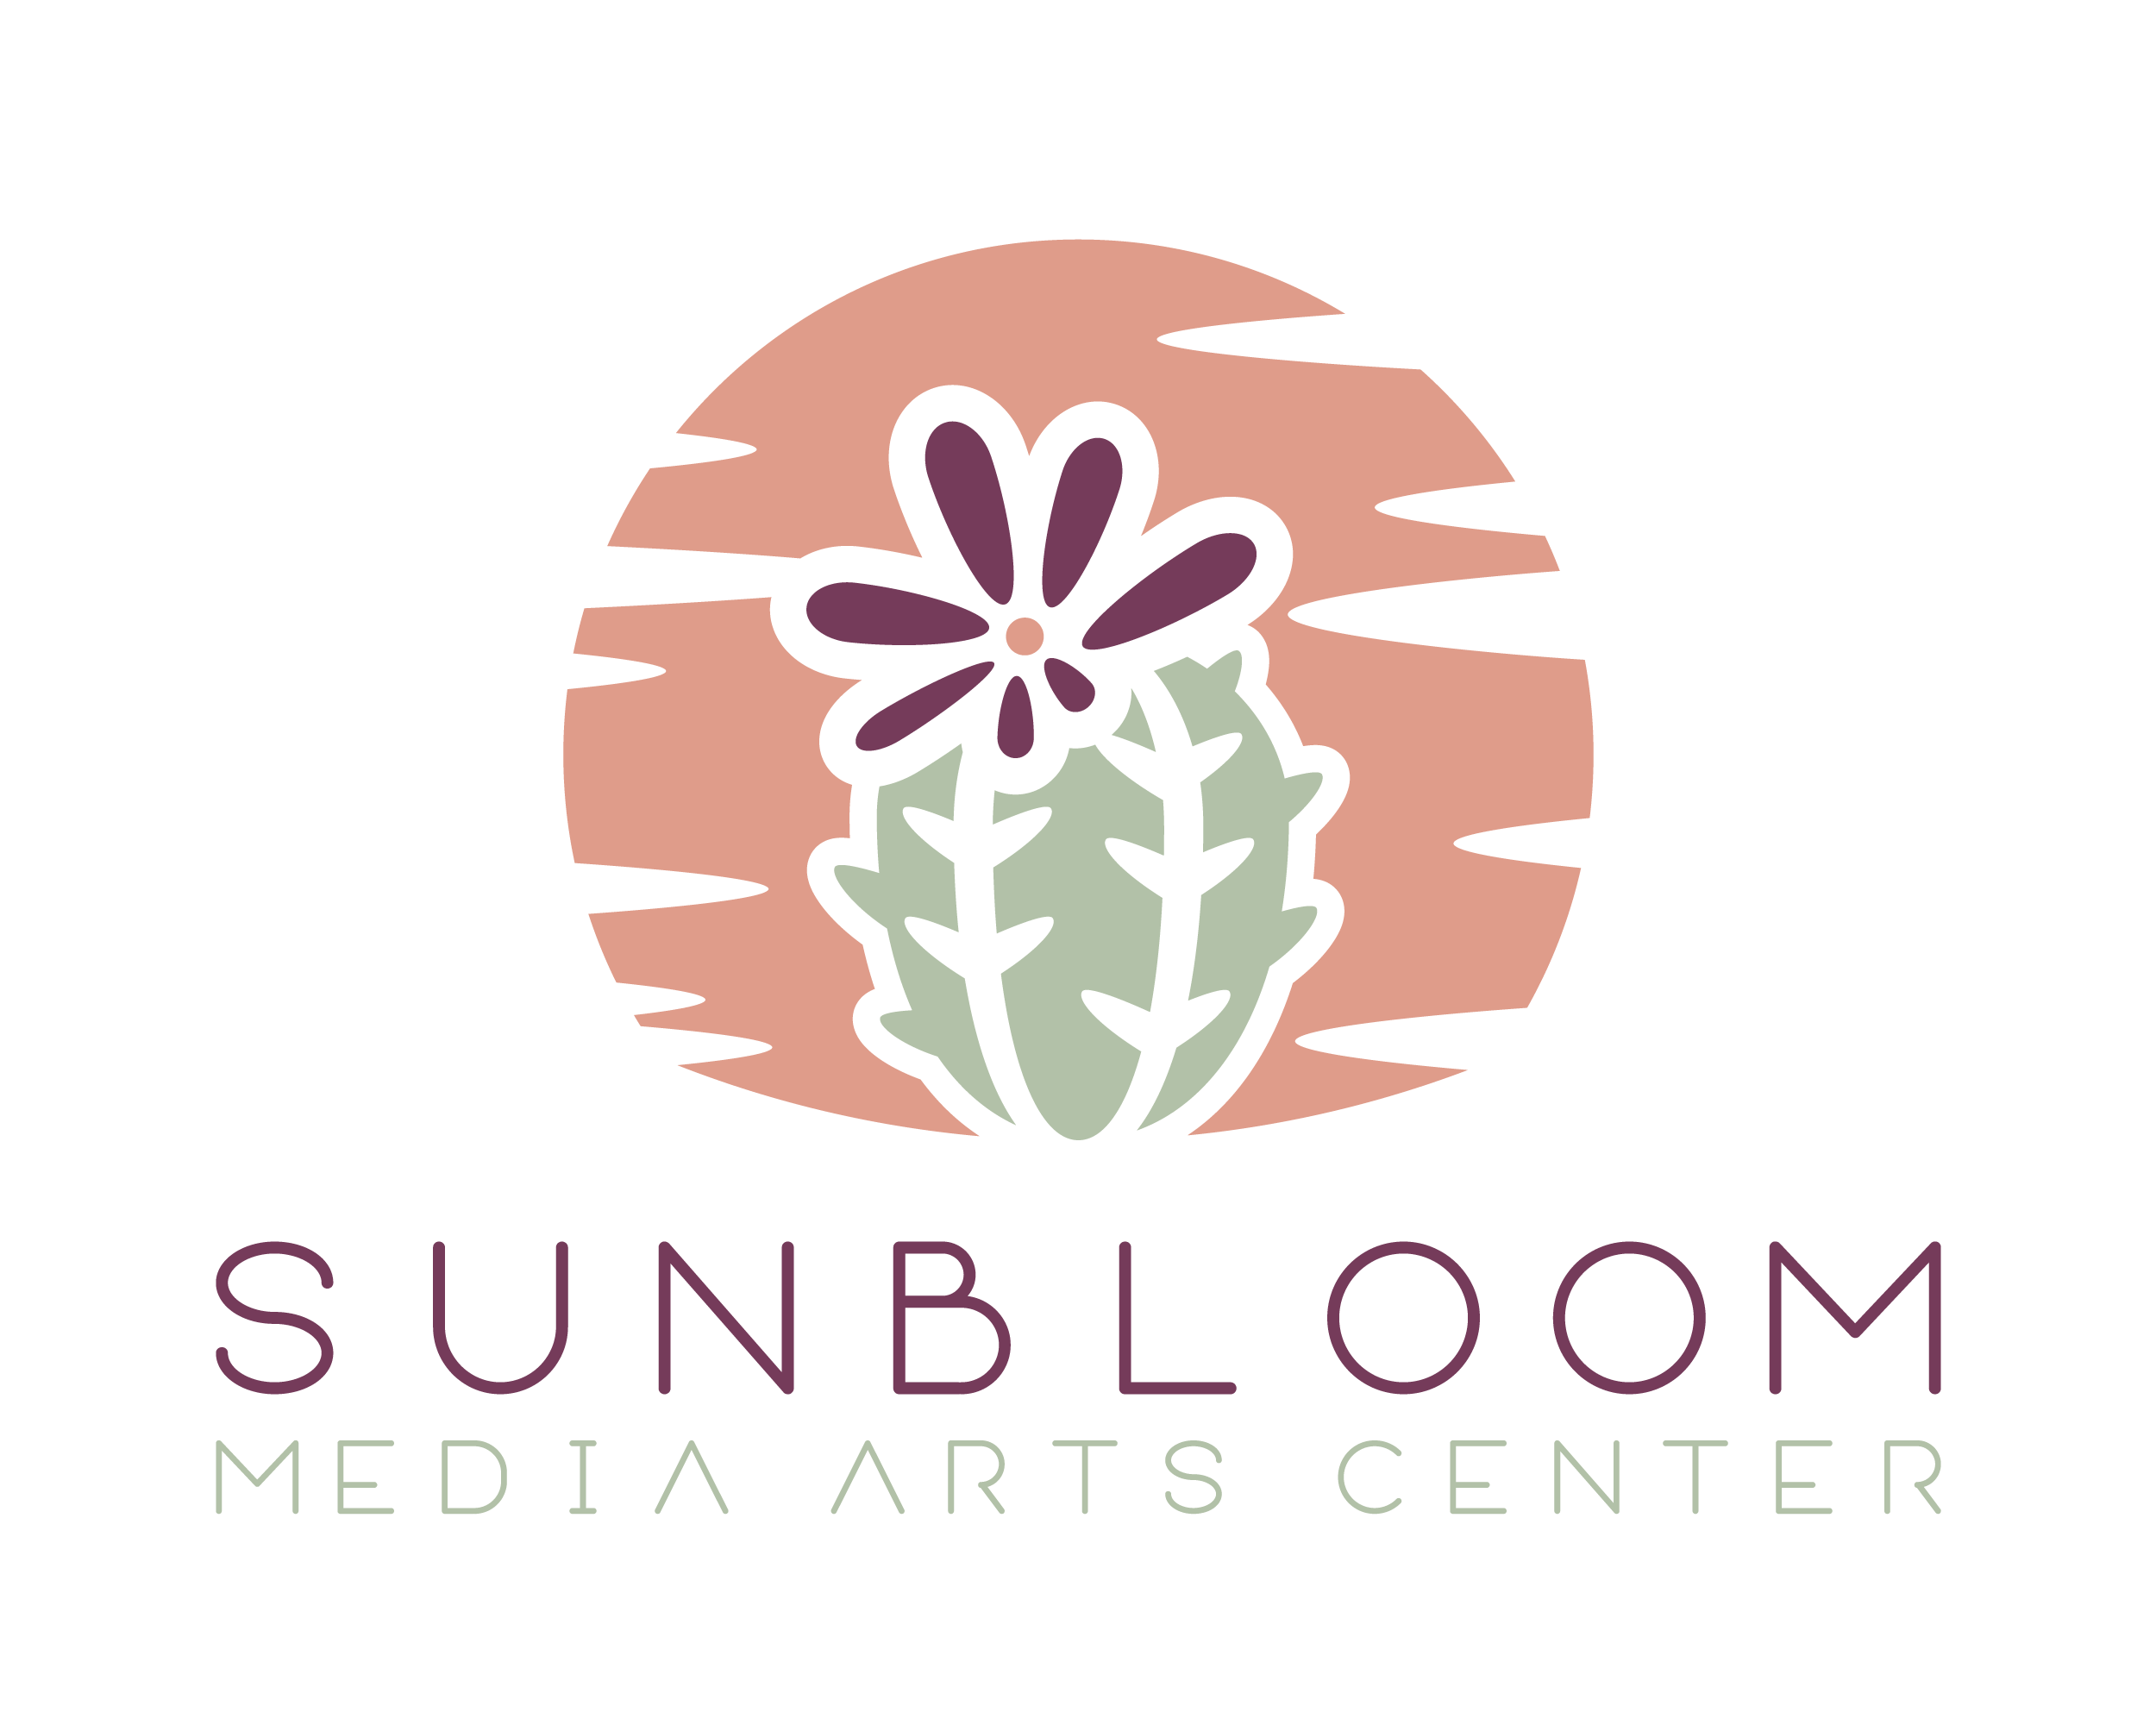 Sunbloom Media Arts Center logo